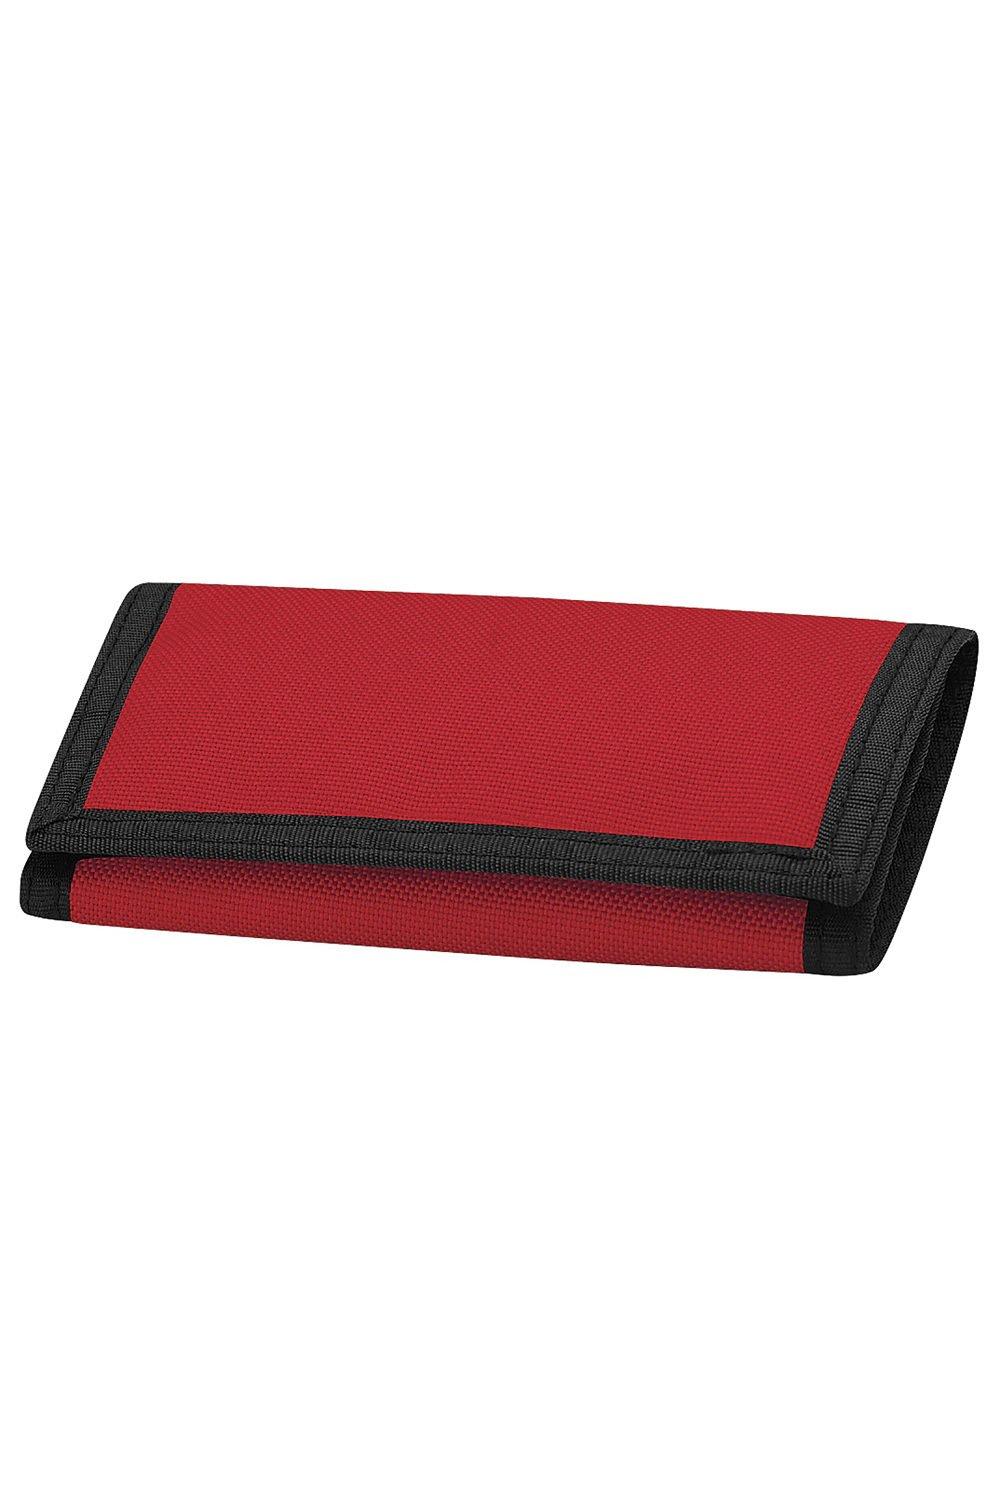 Кошелек Ripper (2 шт.) Bagbase, красный переноска прямоугольная 13 5 х 9 3 х 10 см черная